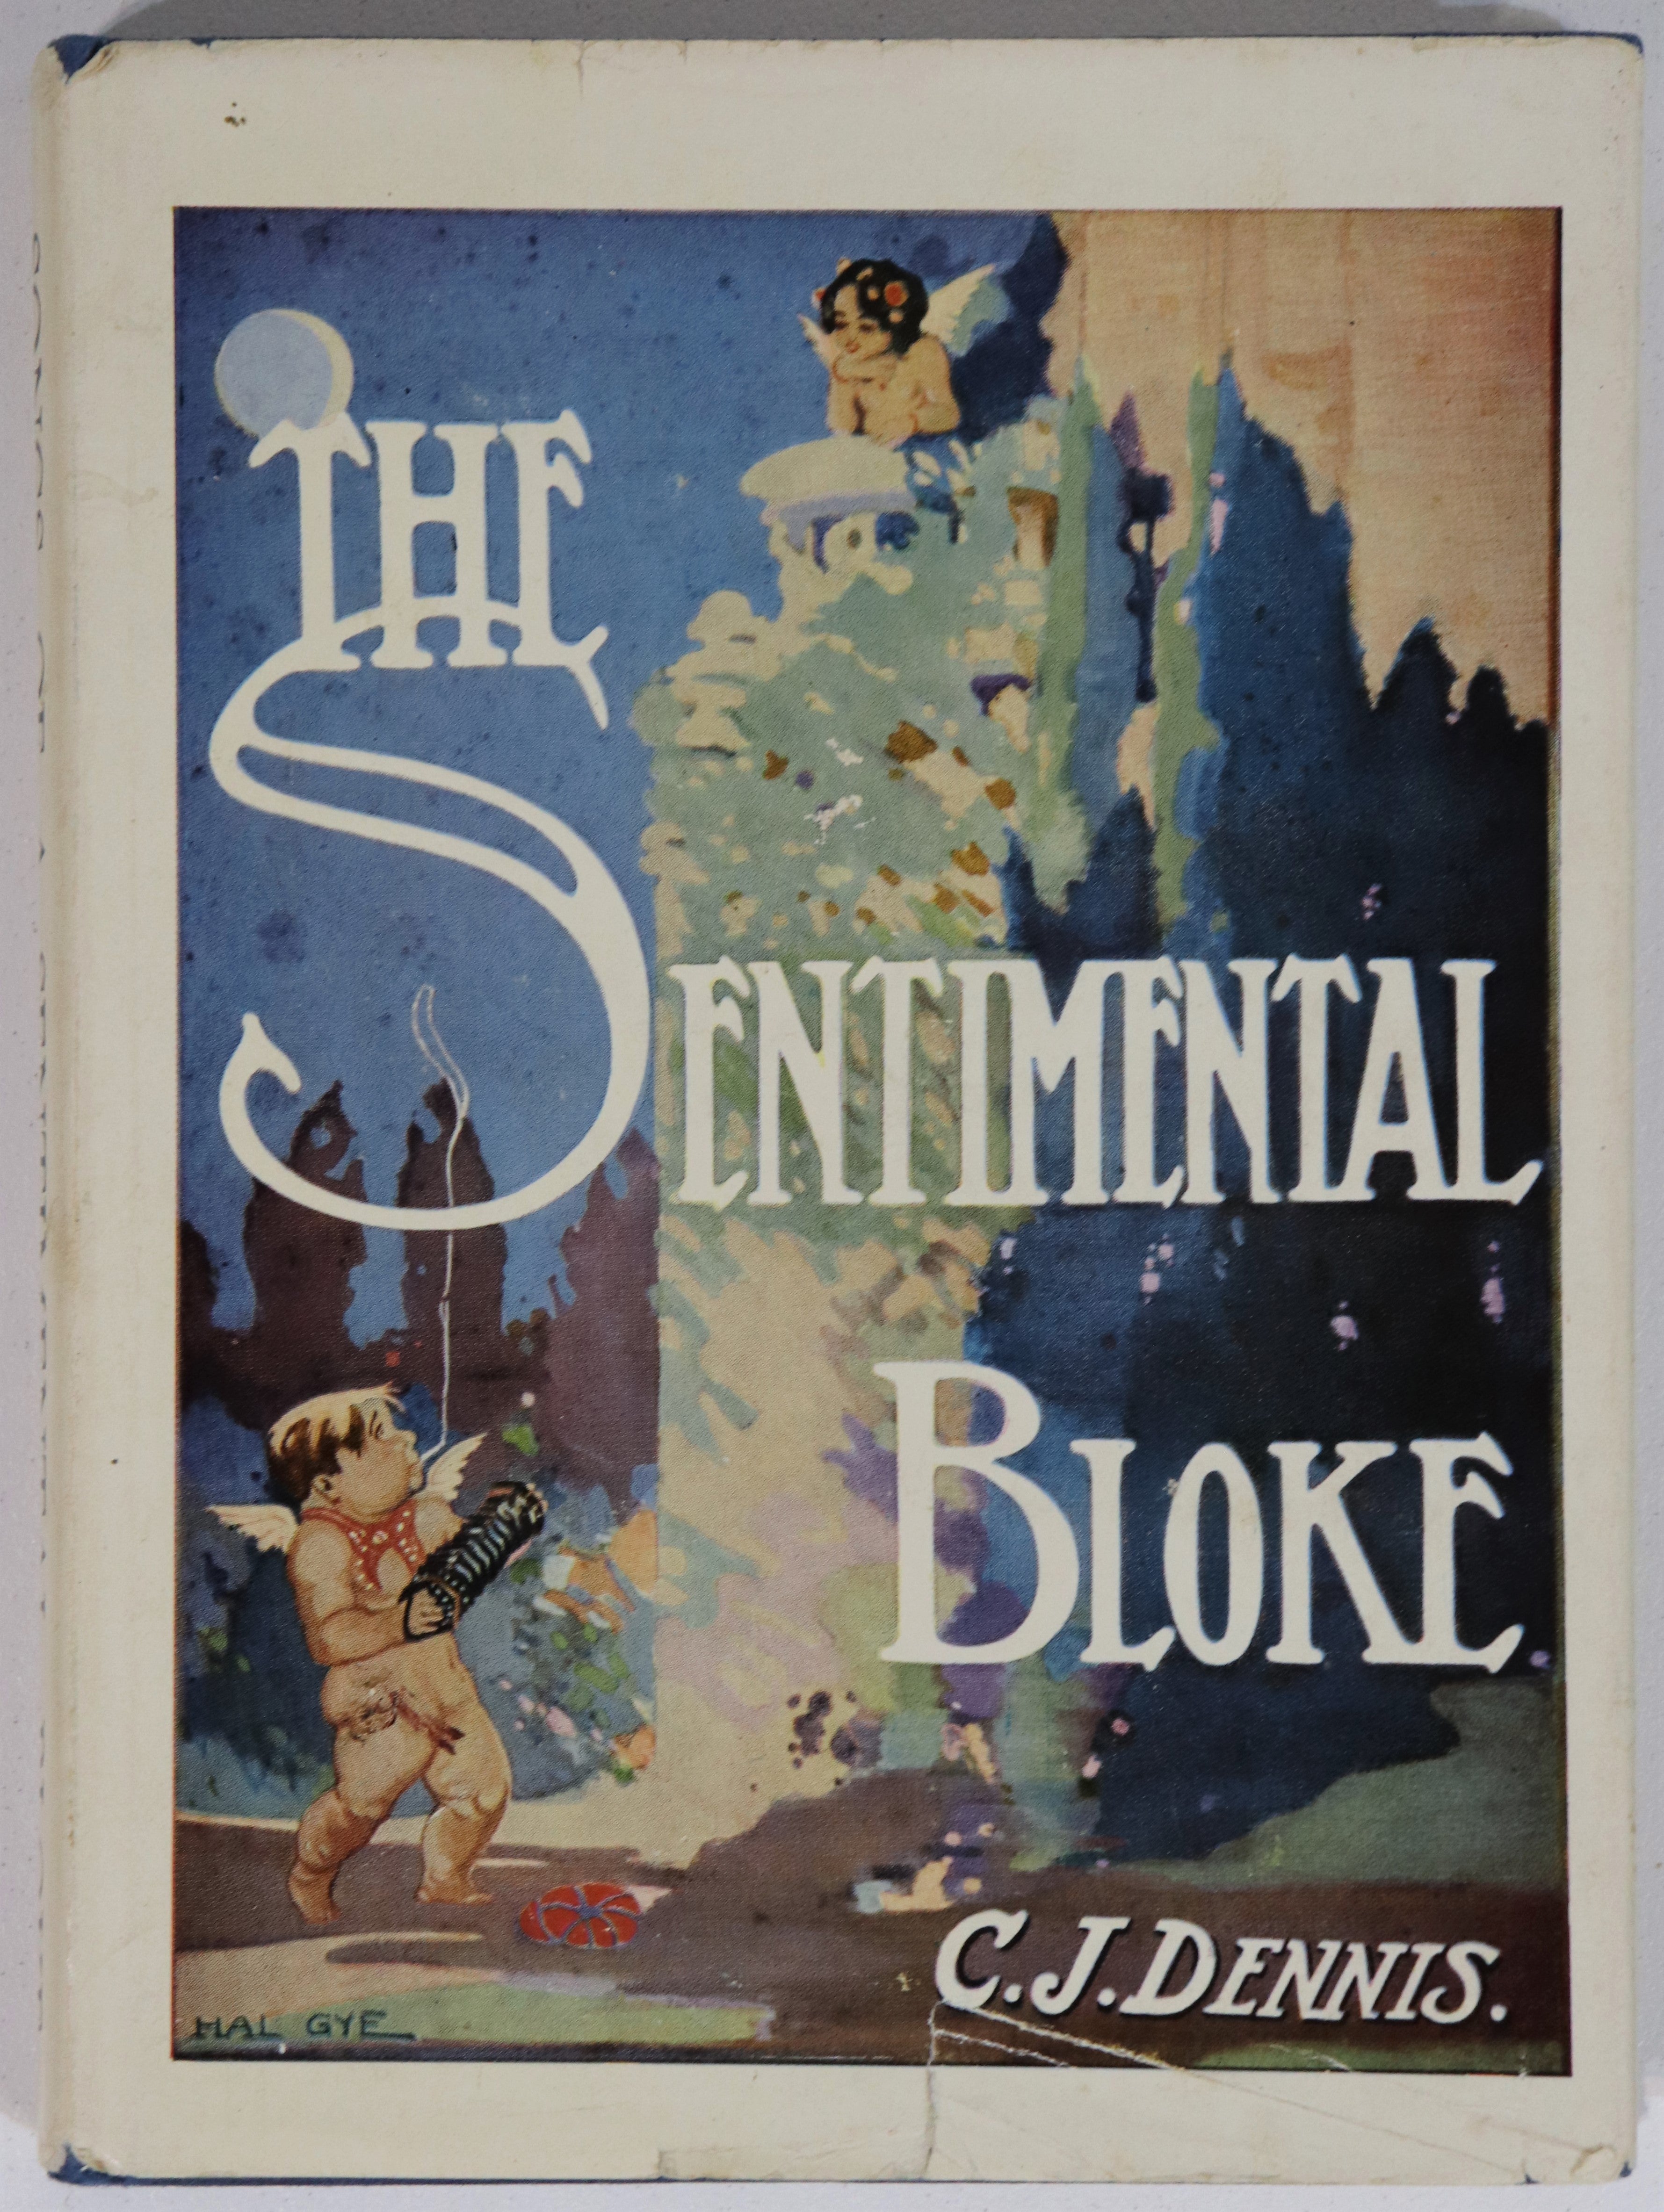 Songs Of A Sentimental Bloke by CJ Dennis - 1967 - Australian Literature Book